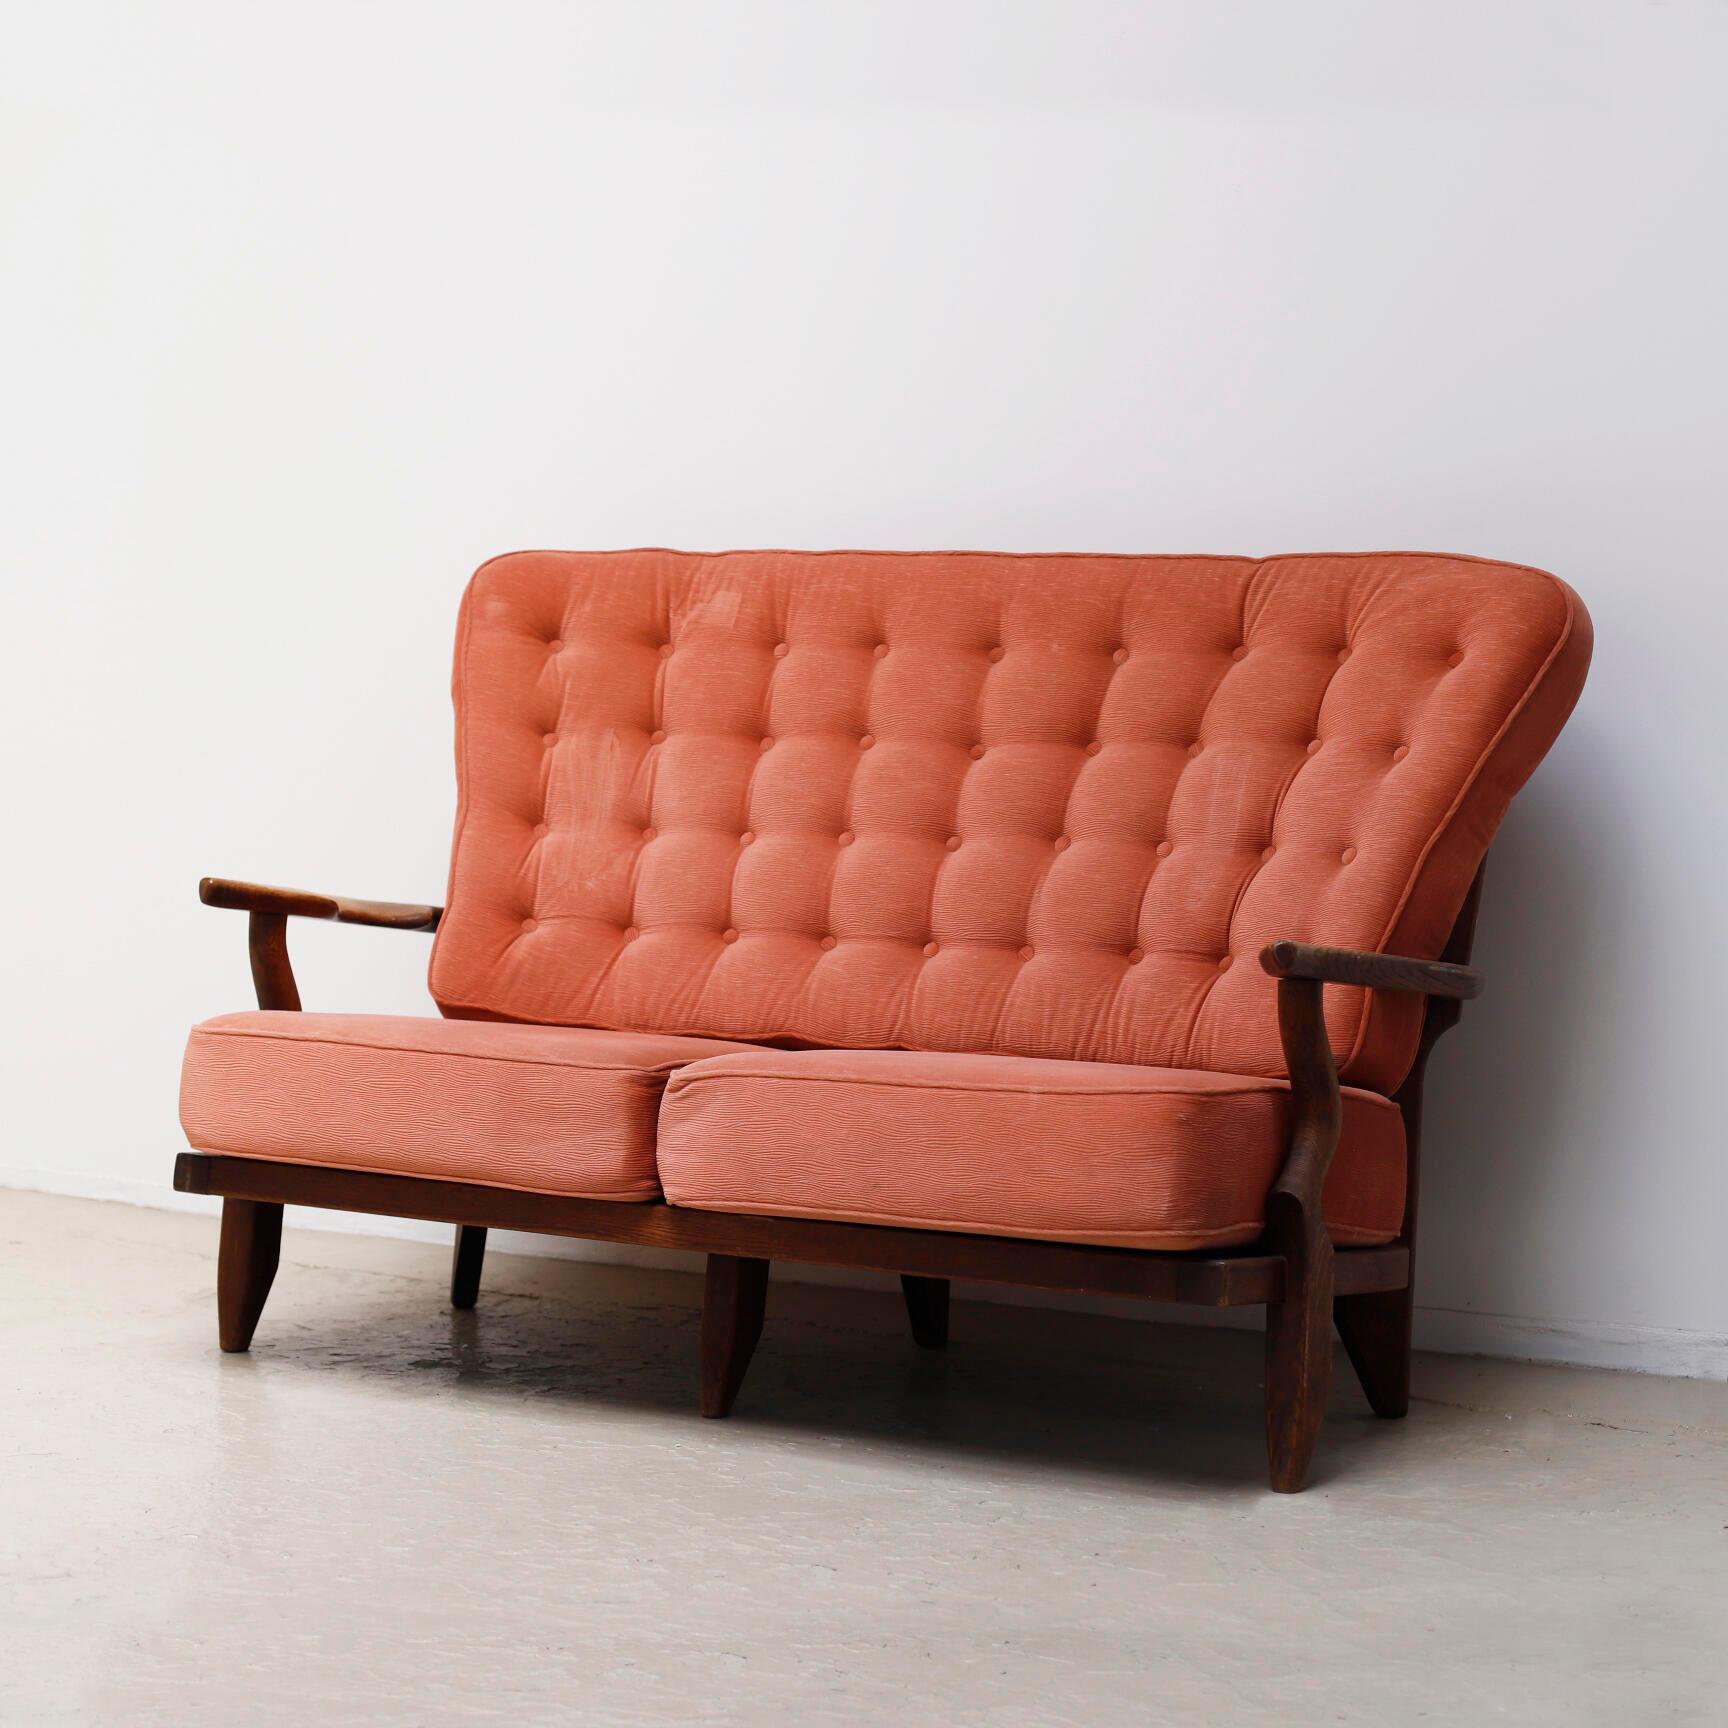 Mid-20th Century Guillerme et Chambron 'Juliette' Sofa for Votre Maison, France, 1950s For Sale